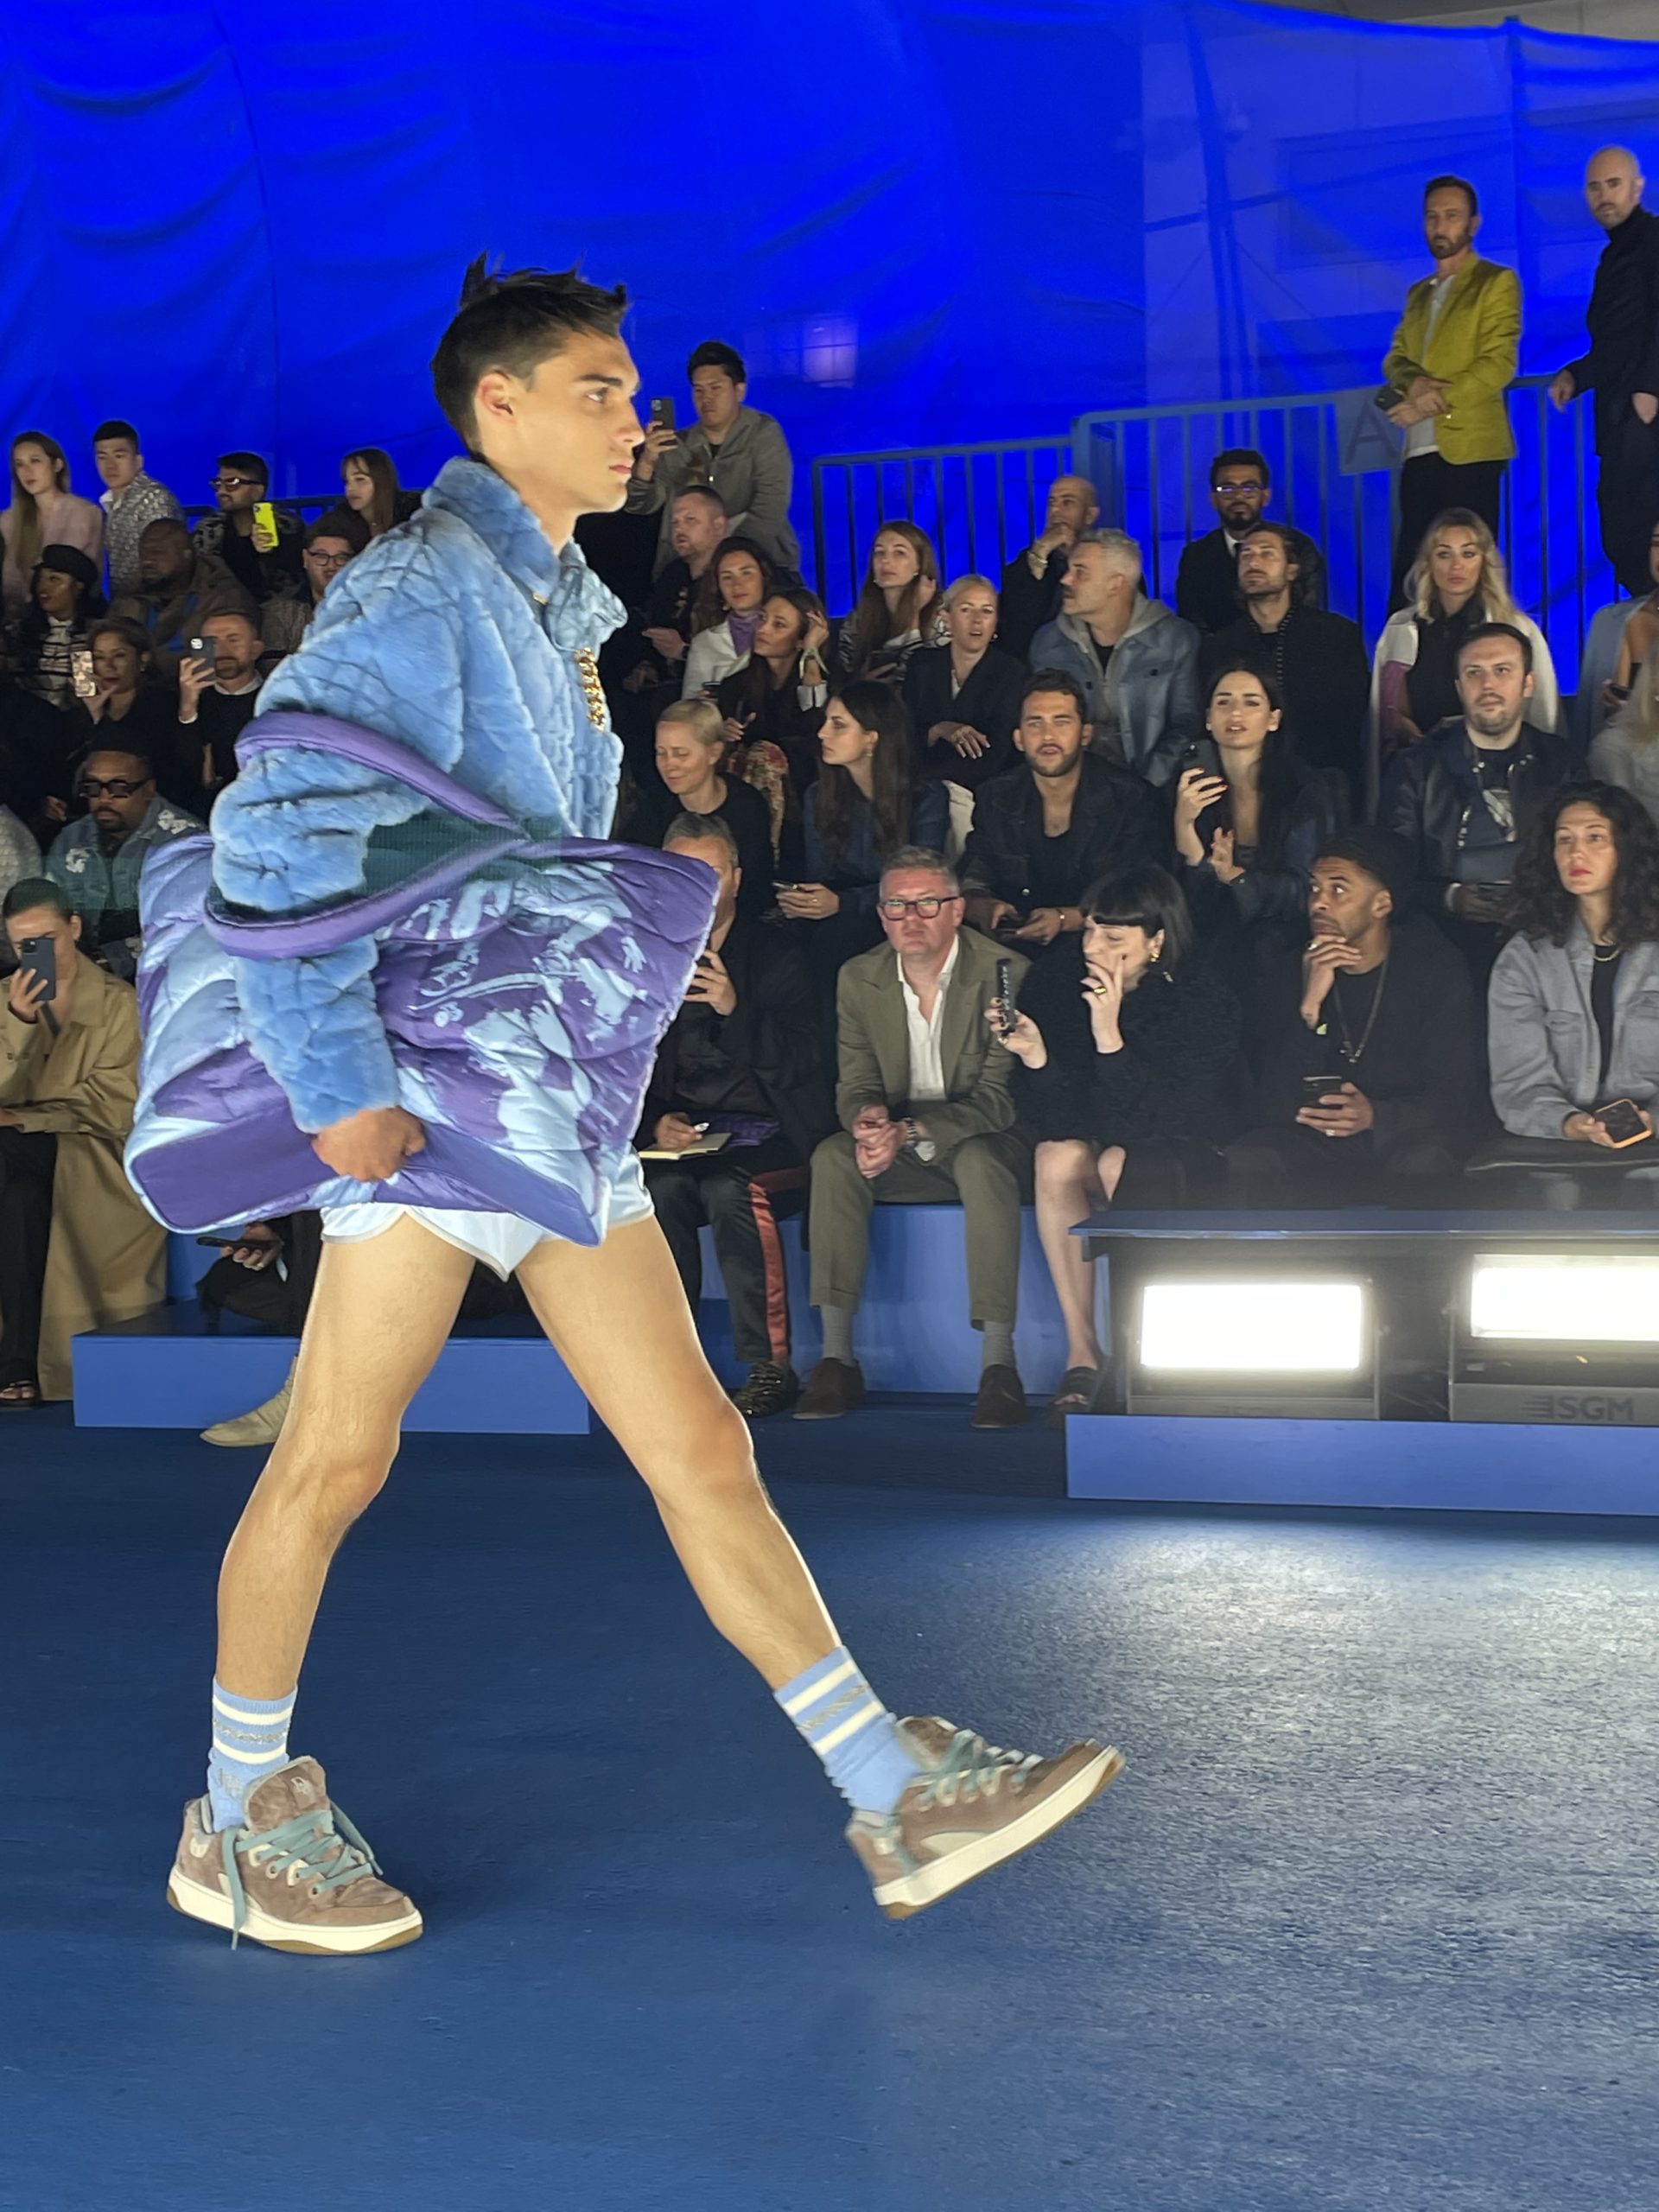 Ξvan Ross Katz on X: The Louis Vuitton harness is proving